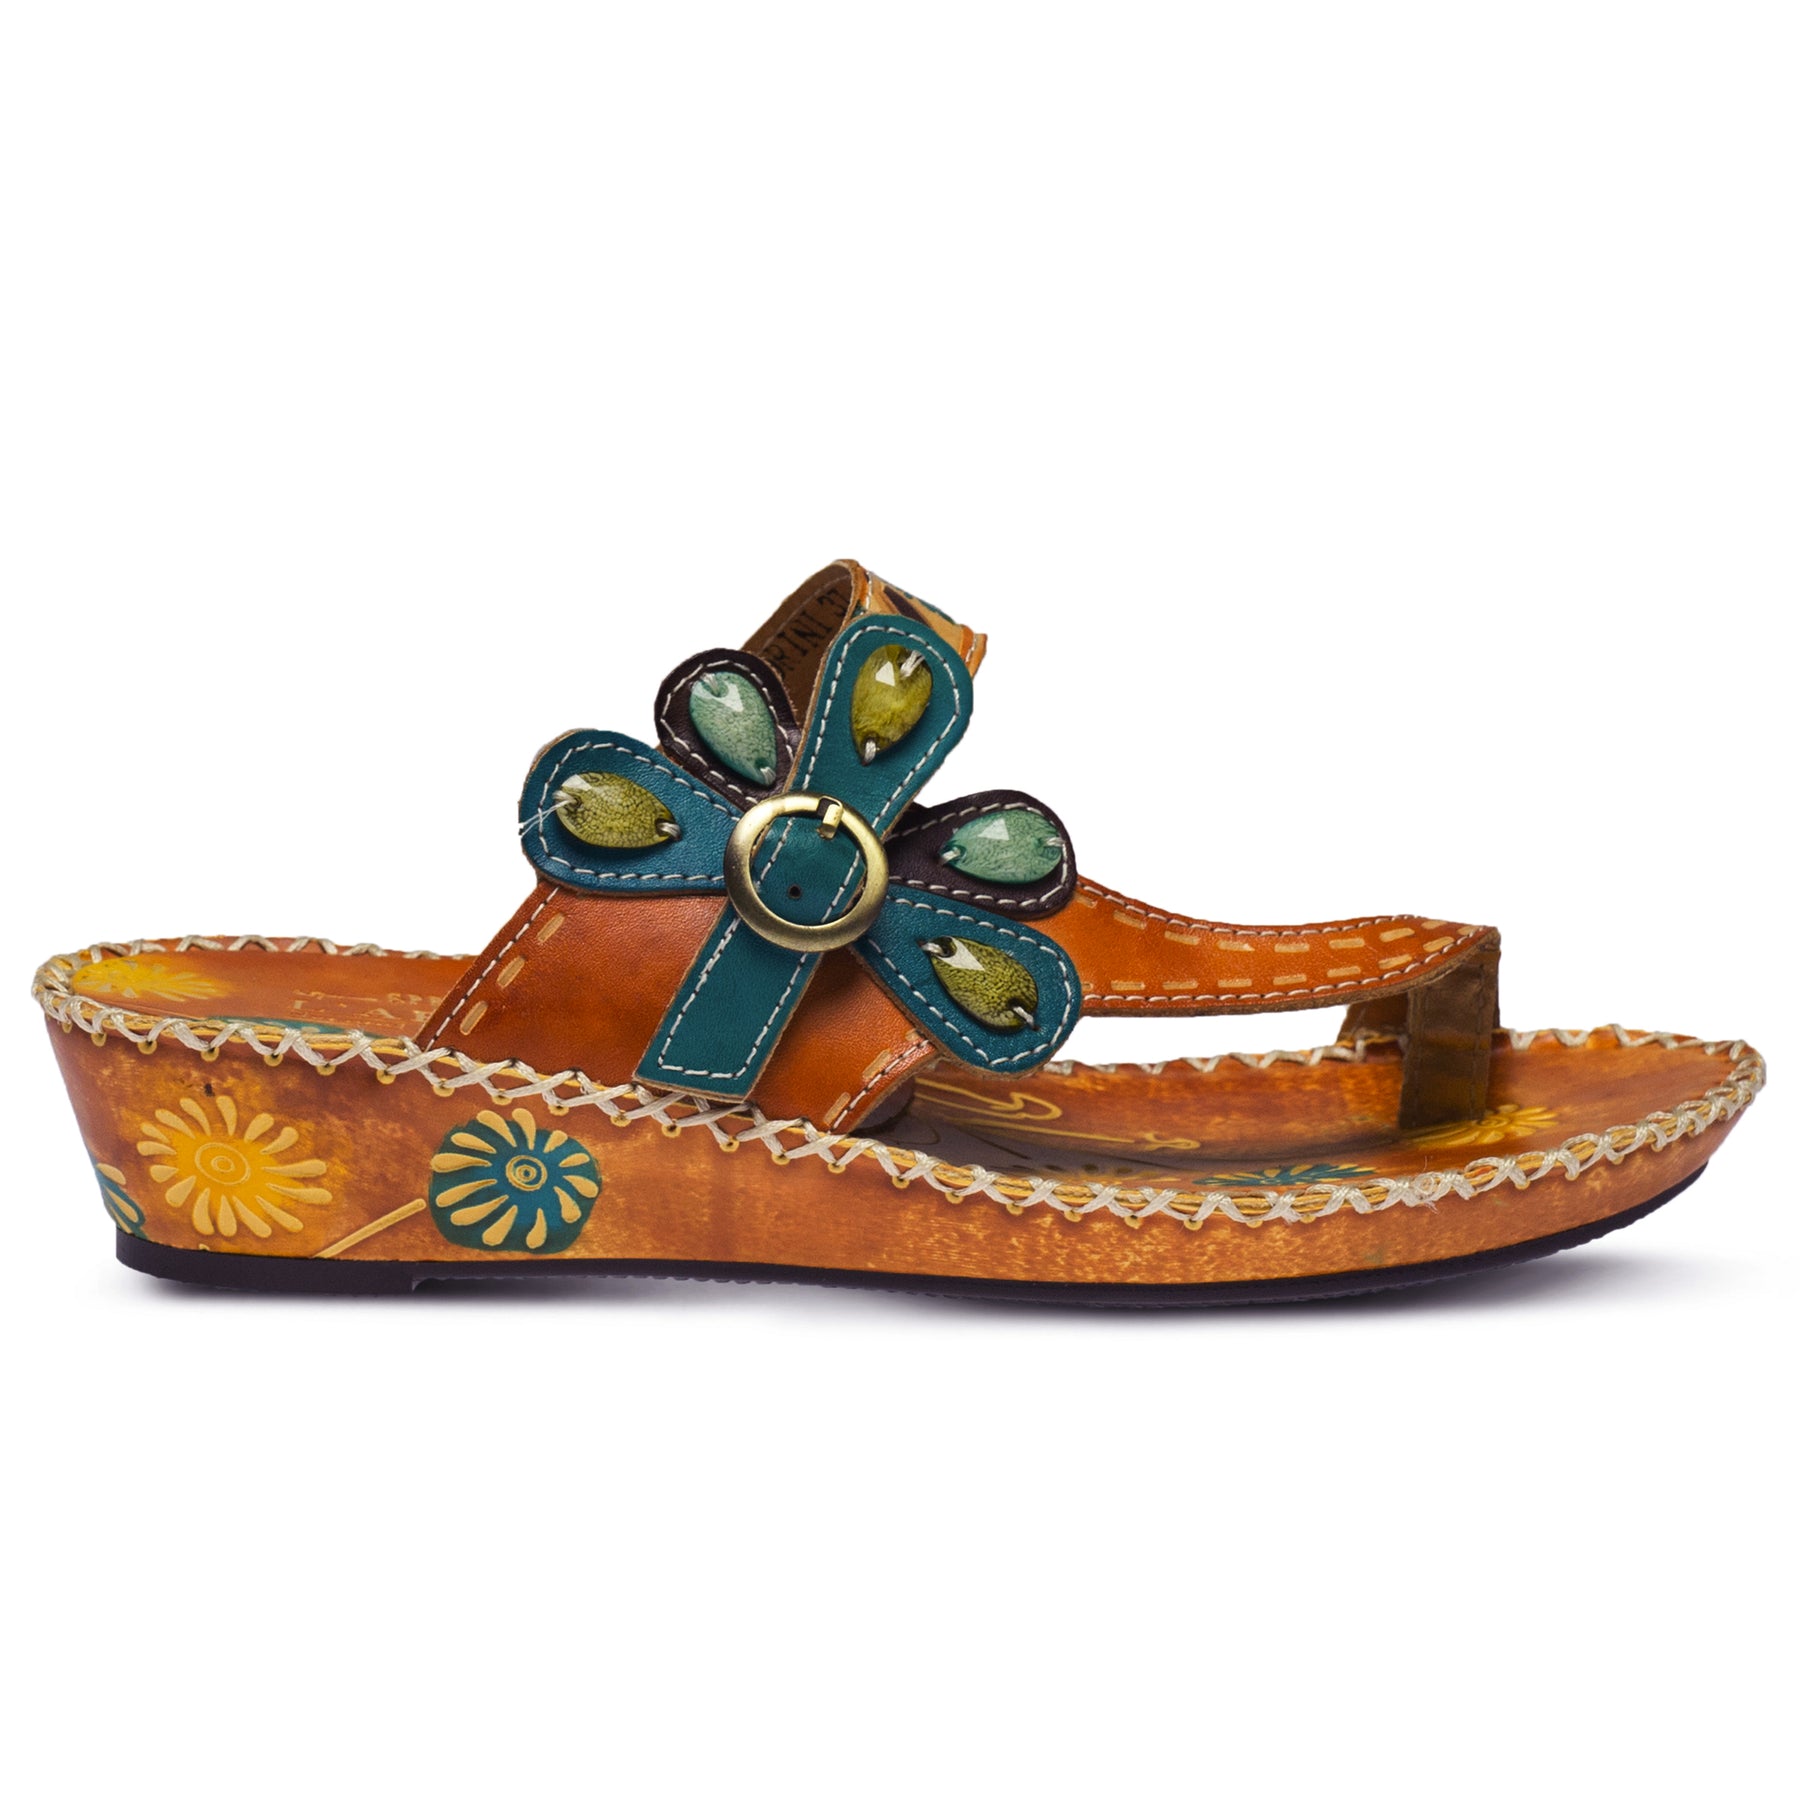 BROWN SANTORINI SLIDE SANDAL by L'ARTISTE – Spring Step Shoes